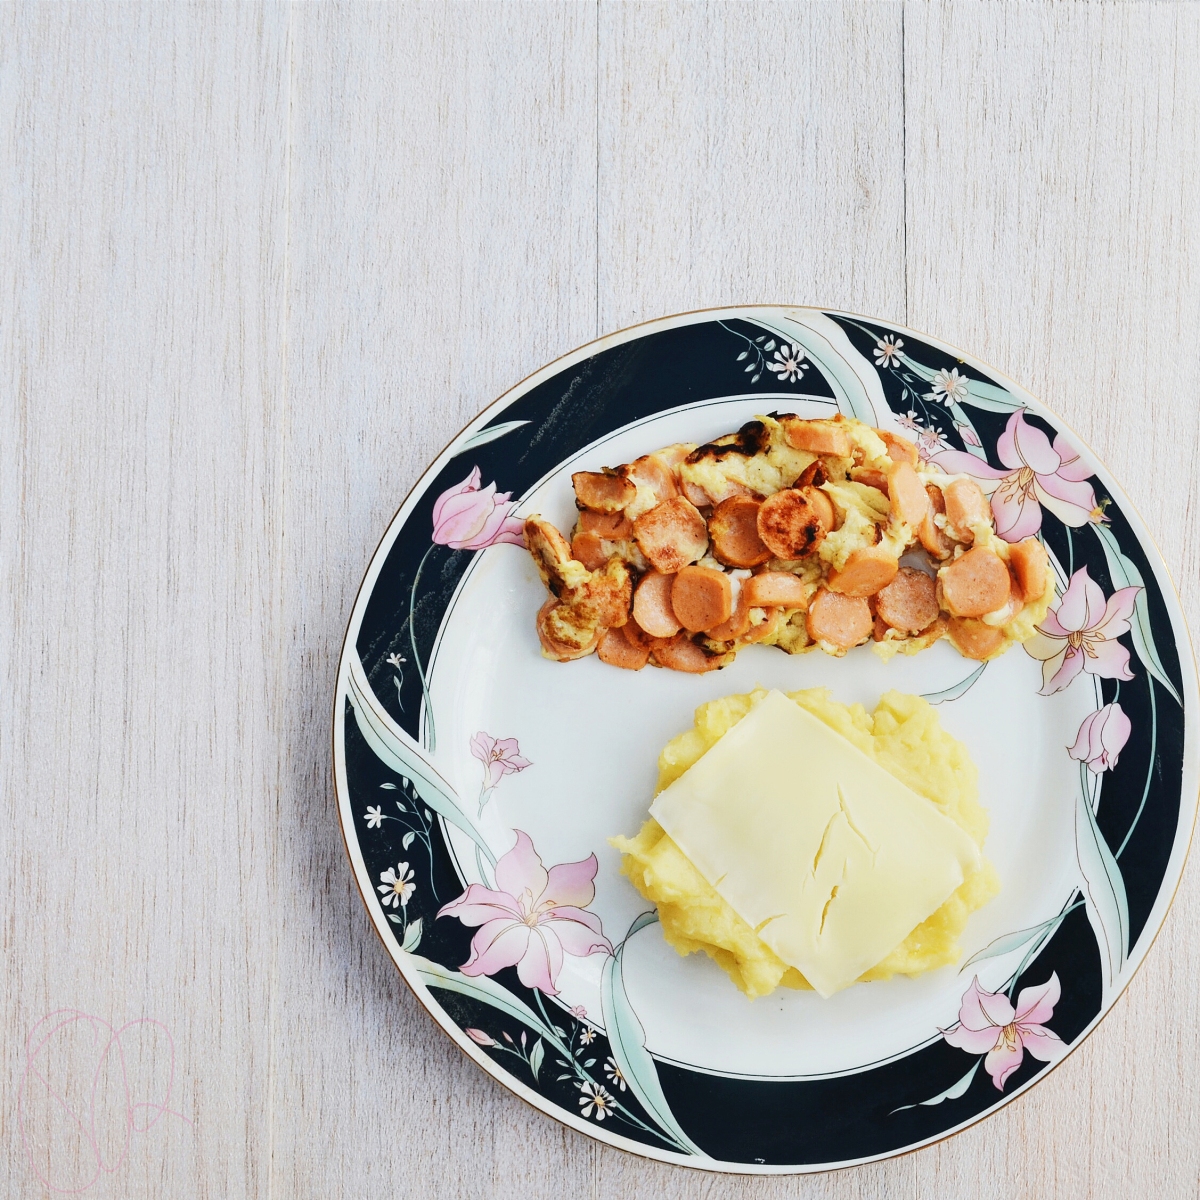 Resep Sarapan Komplit: Mashed Potato, Cheese, Scrambled 